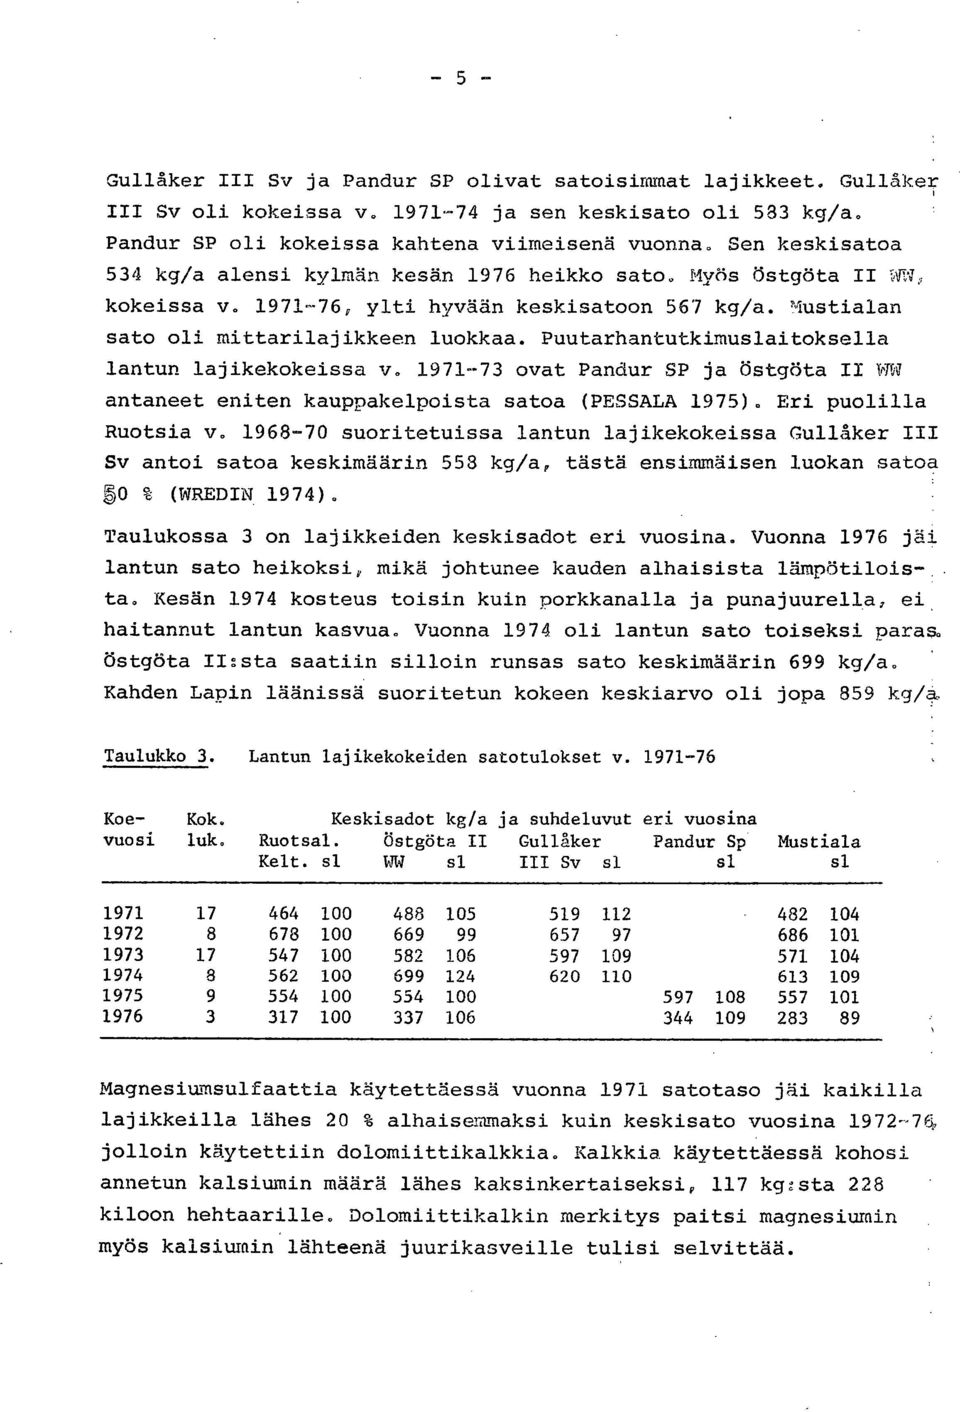 Puutarhantutkimuslaitoksella lantun lajikekokeissa v. 1971-73 ovat Pandur SP ja Östgöta II WW antaneet eniten kauppakelpoista satoa (PESSALA 1975). Eri puolilla Ruotsia v.